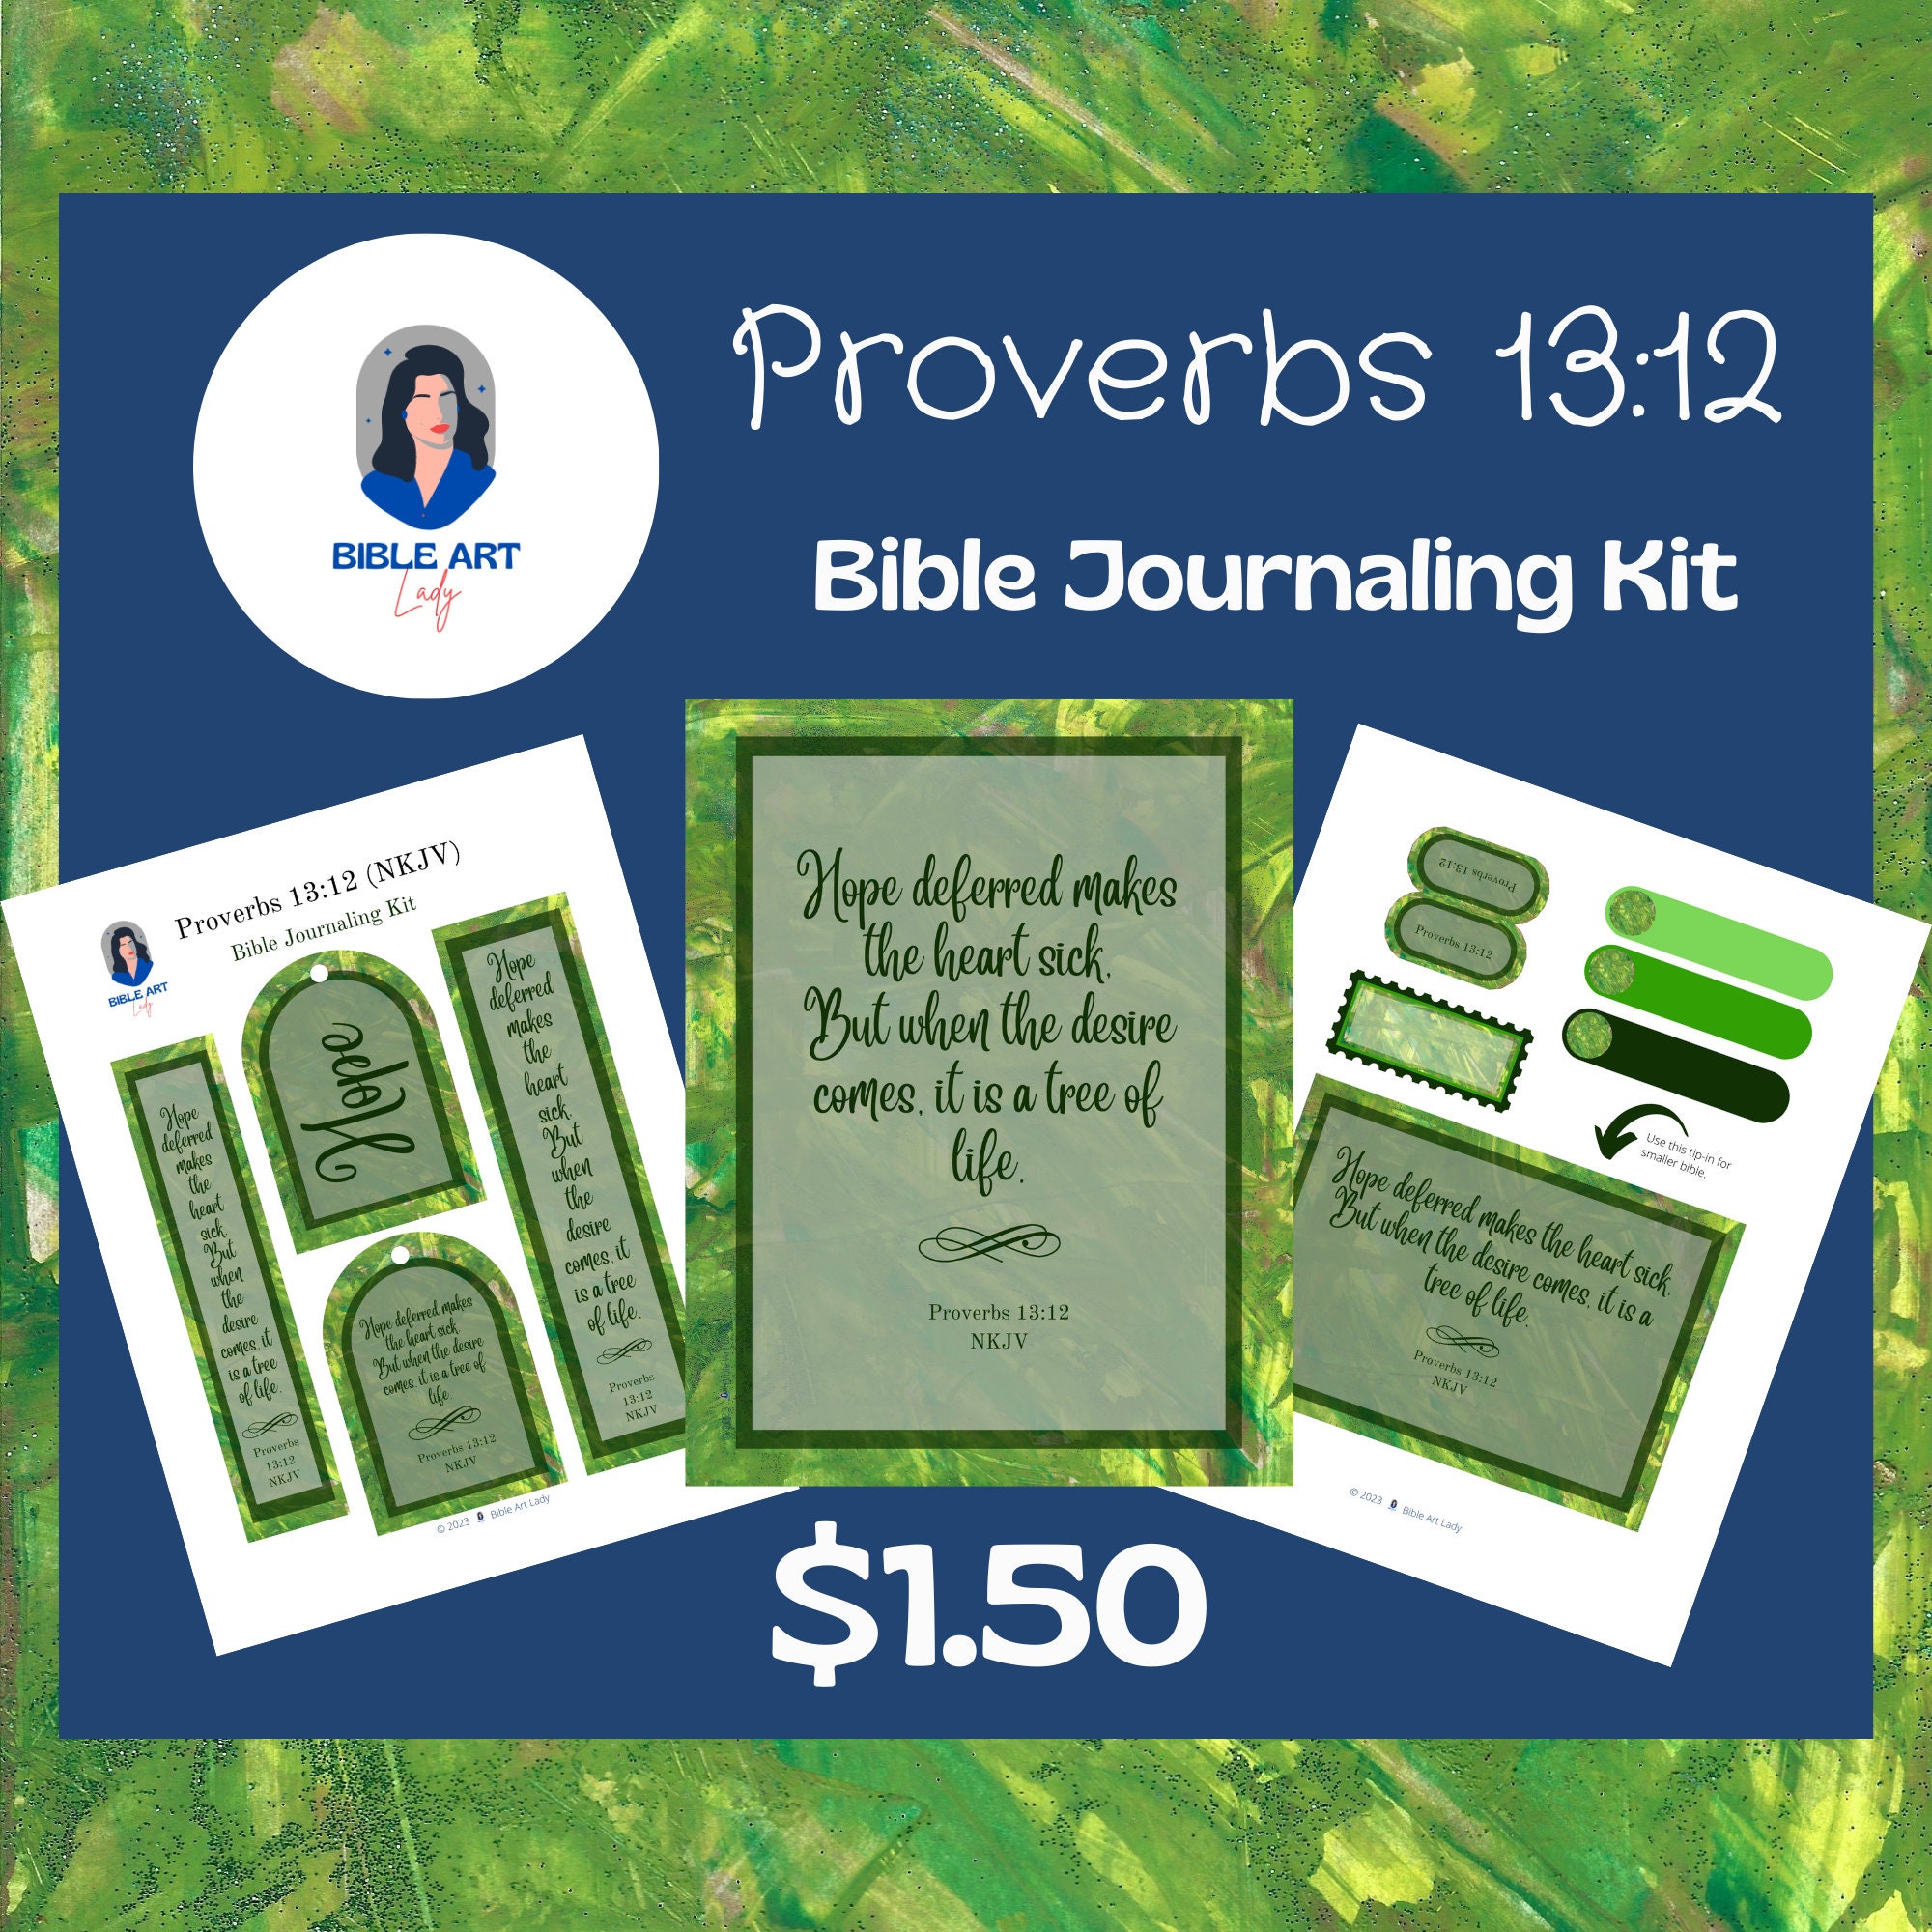 Proverbs 13:12 NKJV Bible Journaling Kit -  Ireland